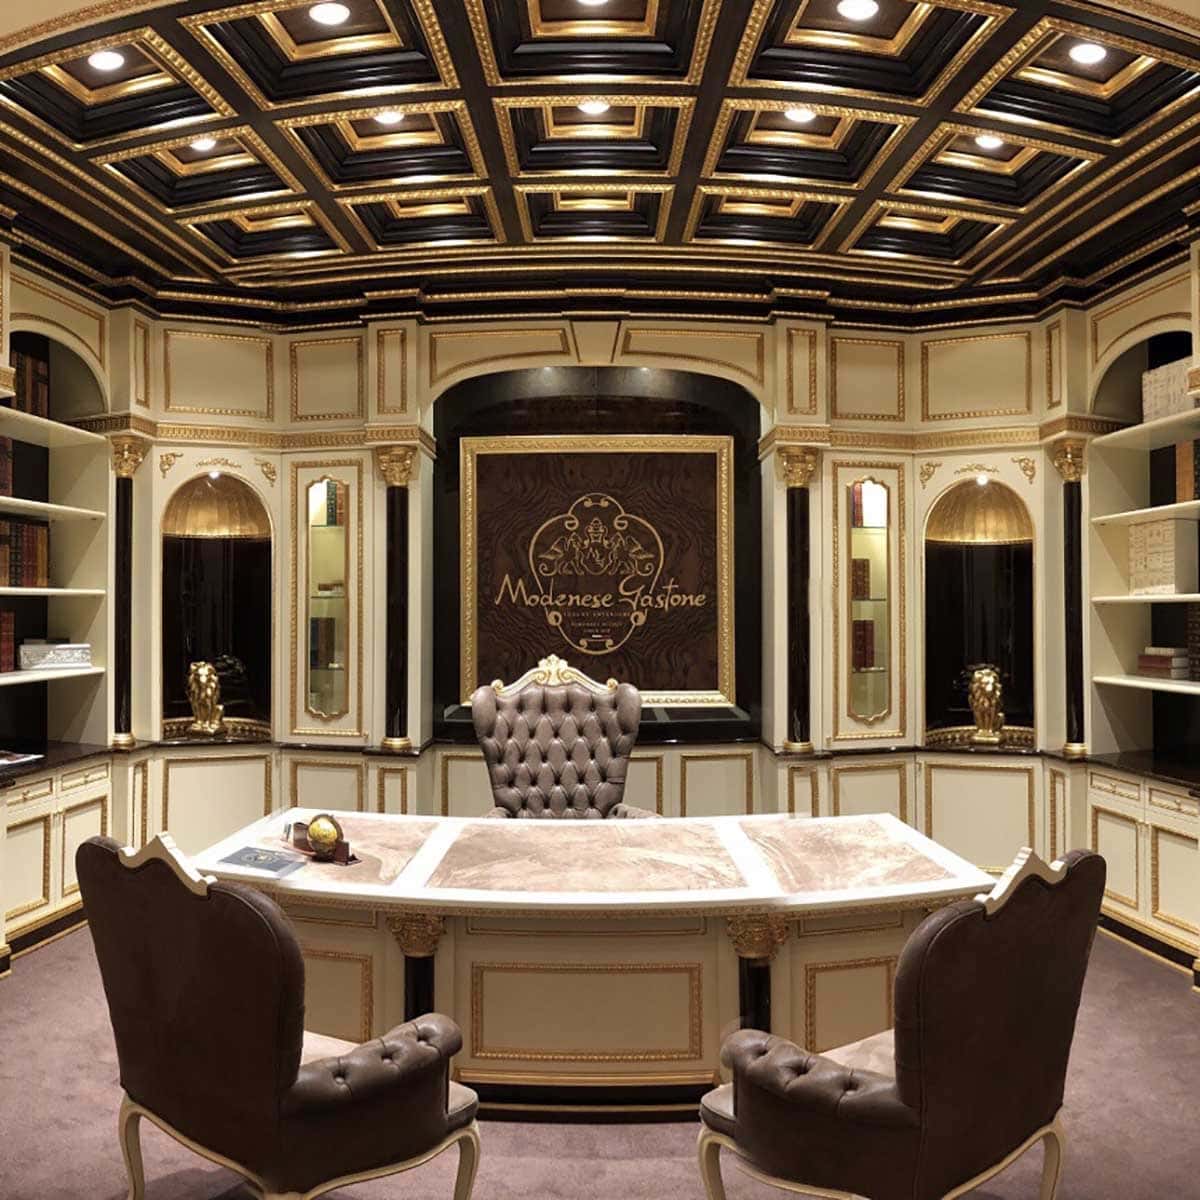 luxury office